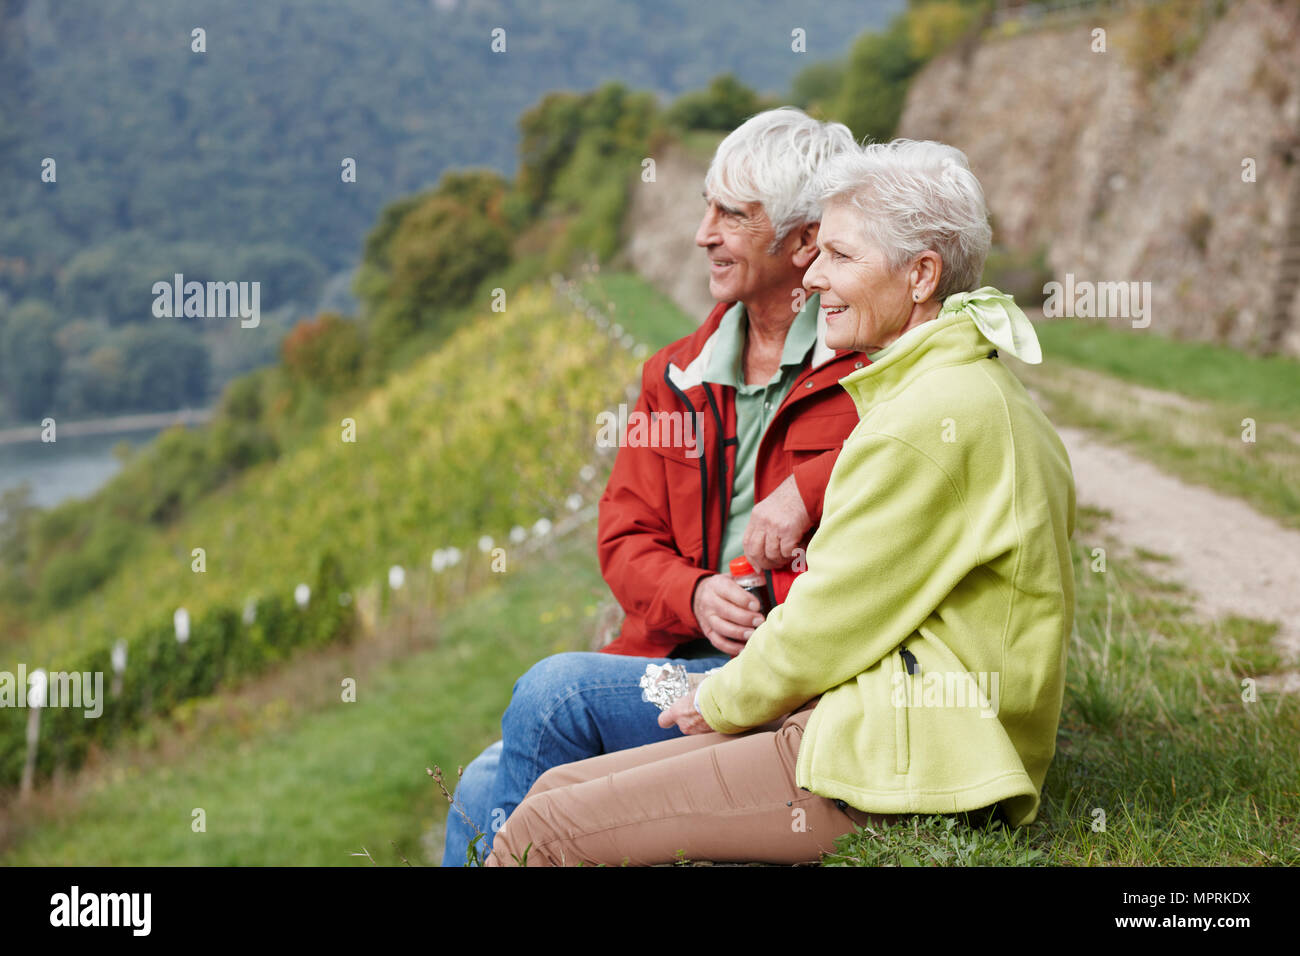 Germania, Rheingau, escursionismo coppia senior avente un periodo di riposo Foto Stock